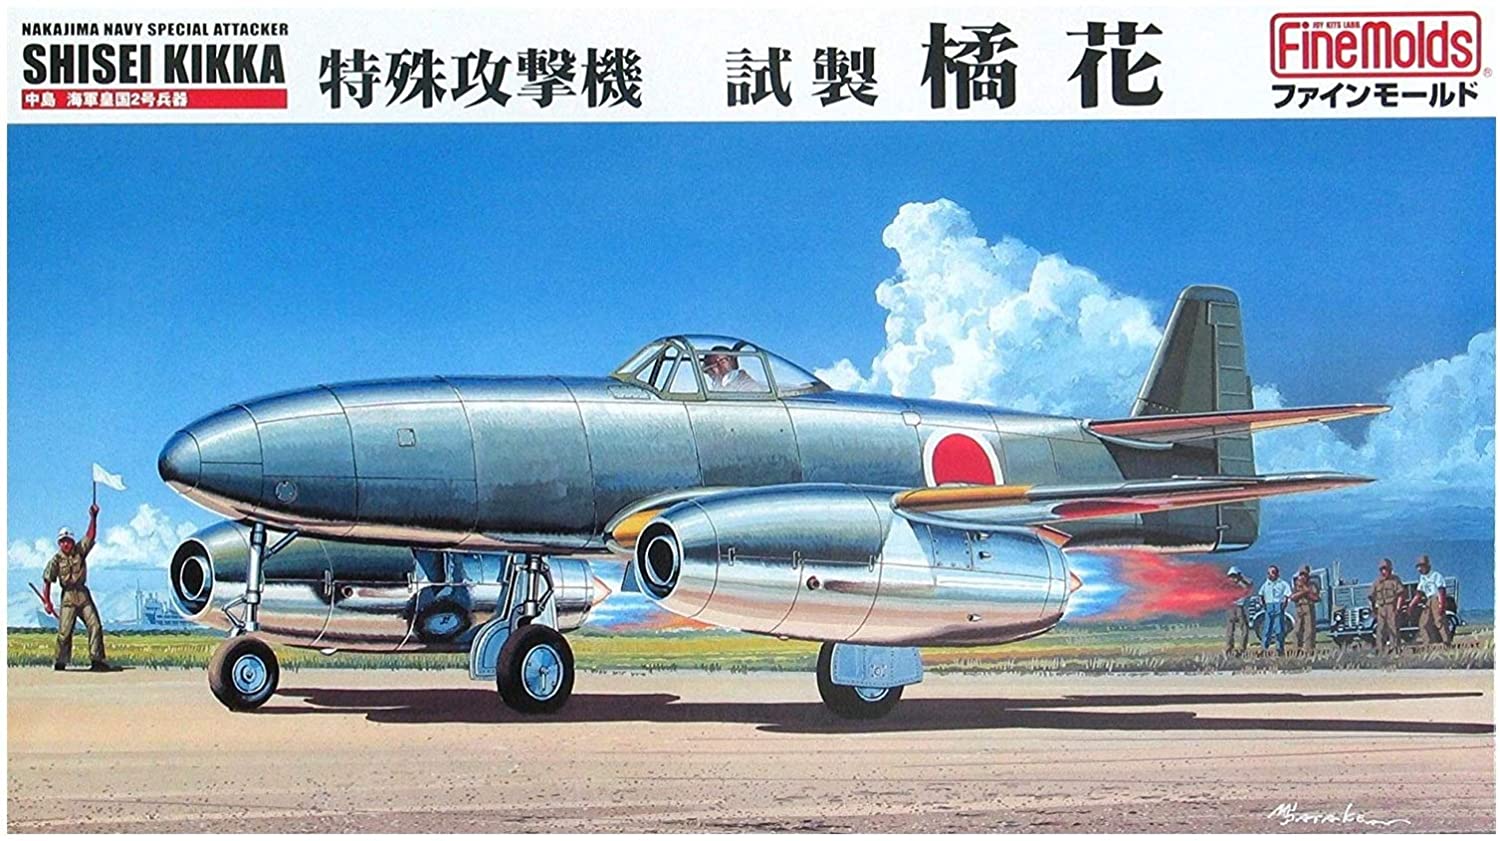 ファインモールド 1/48 日本海軍 特殊攻撃機 試製橘花 プラモデル FB10